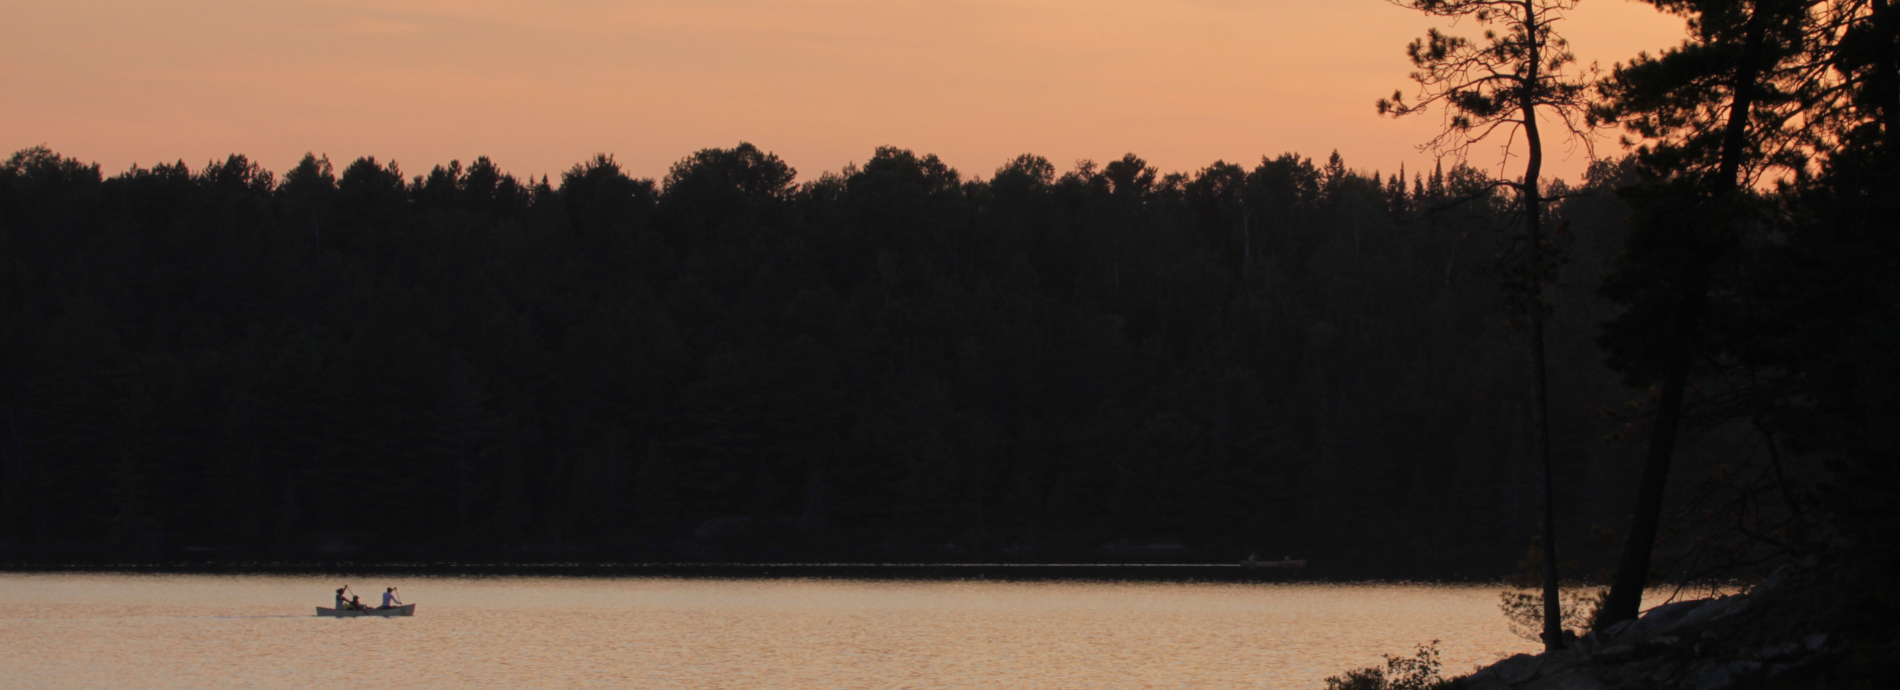 canoeing at dusk